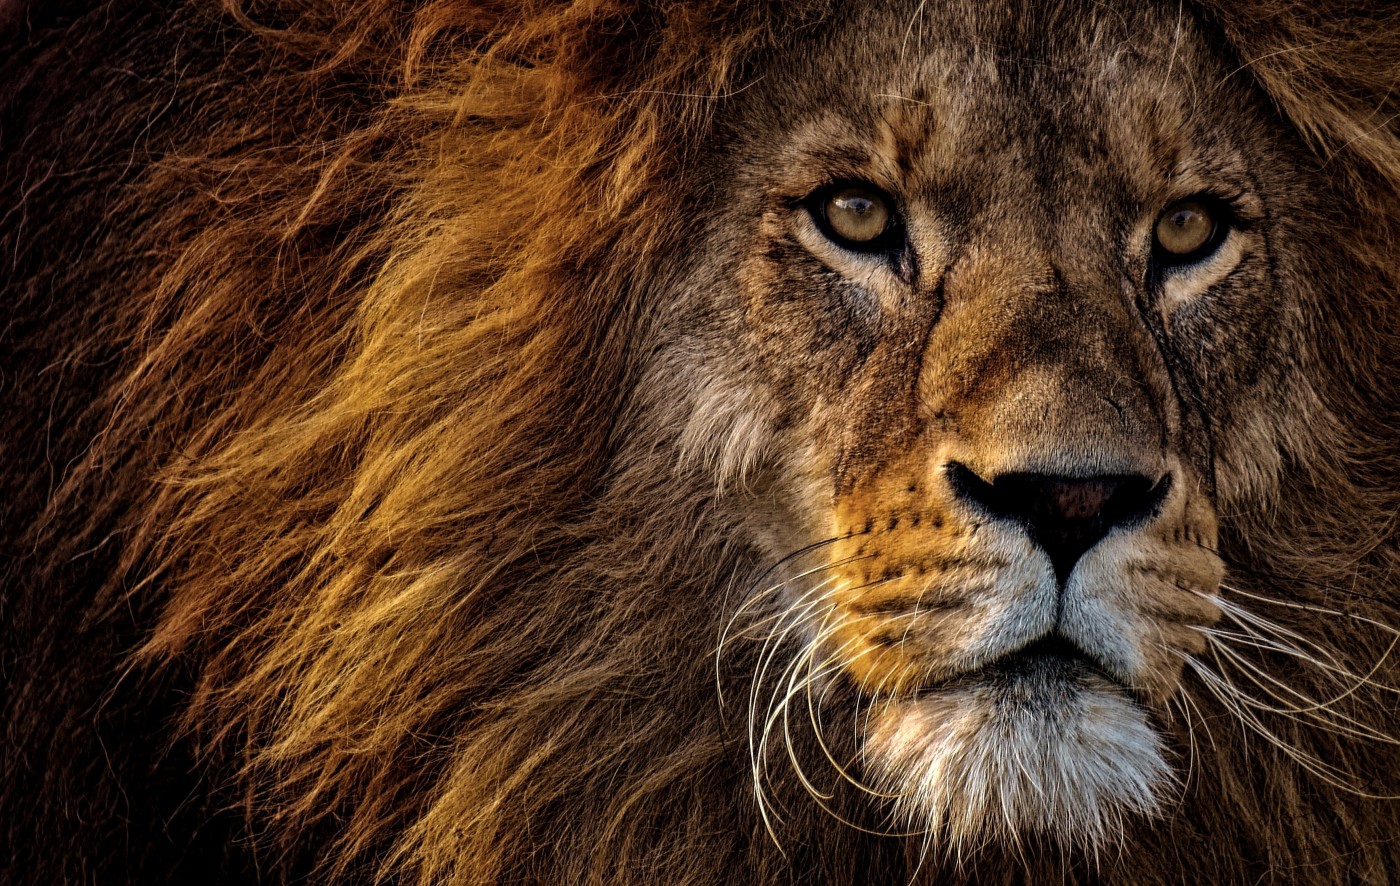 网站首页 - 图库素材 - 艺术摄影 图片信息简介:高清晰威猛的雄狮壁纸